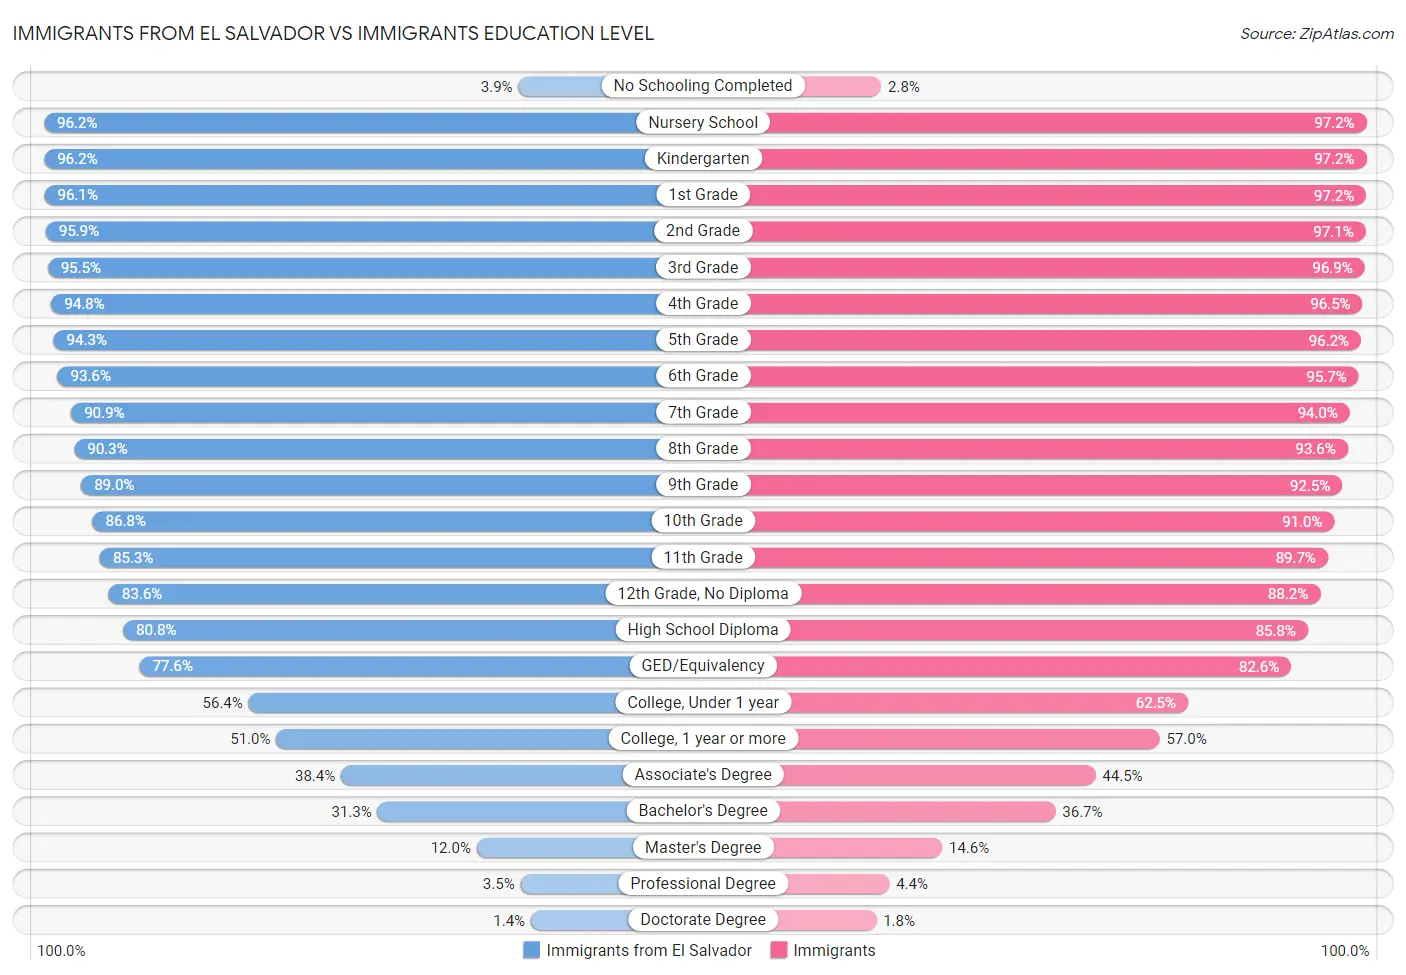 Immigrants from El Salvador vs Immigrants Education Level